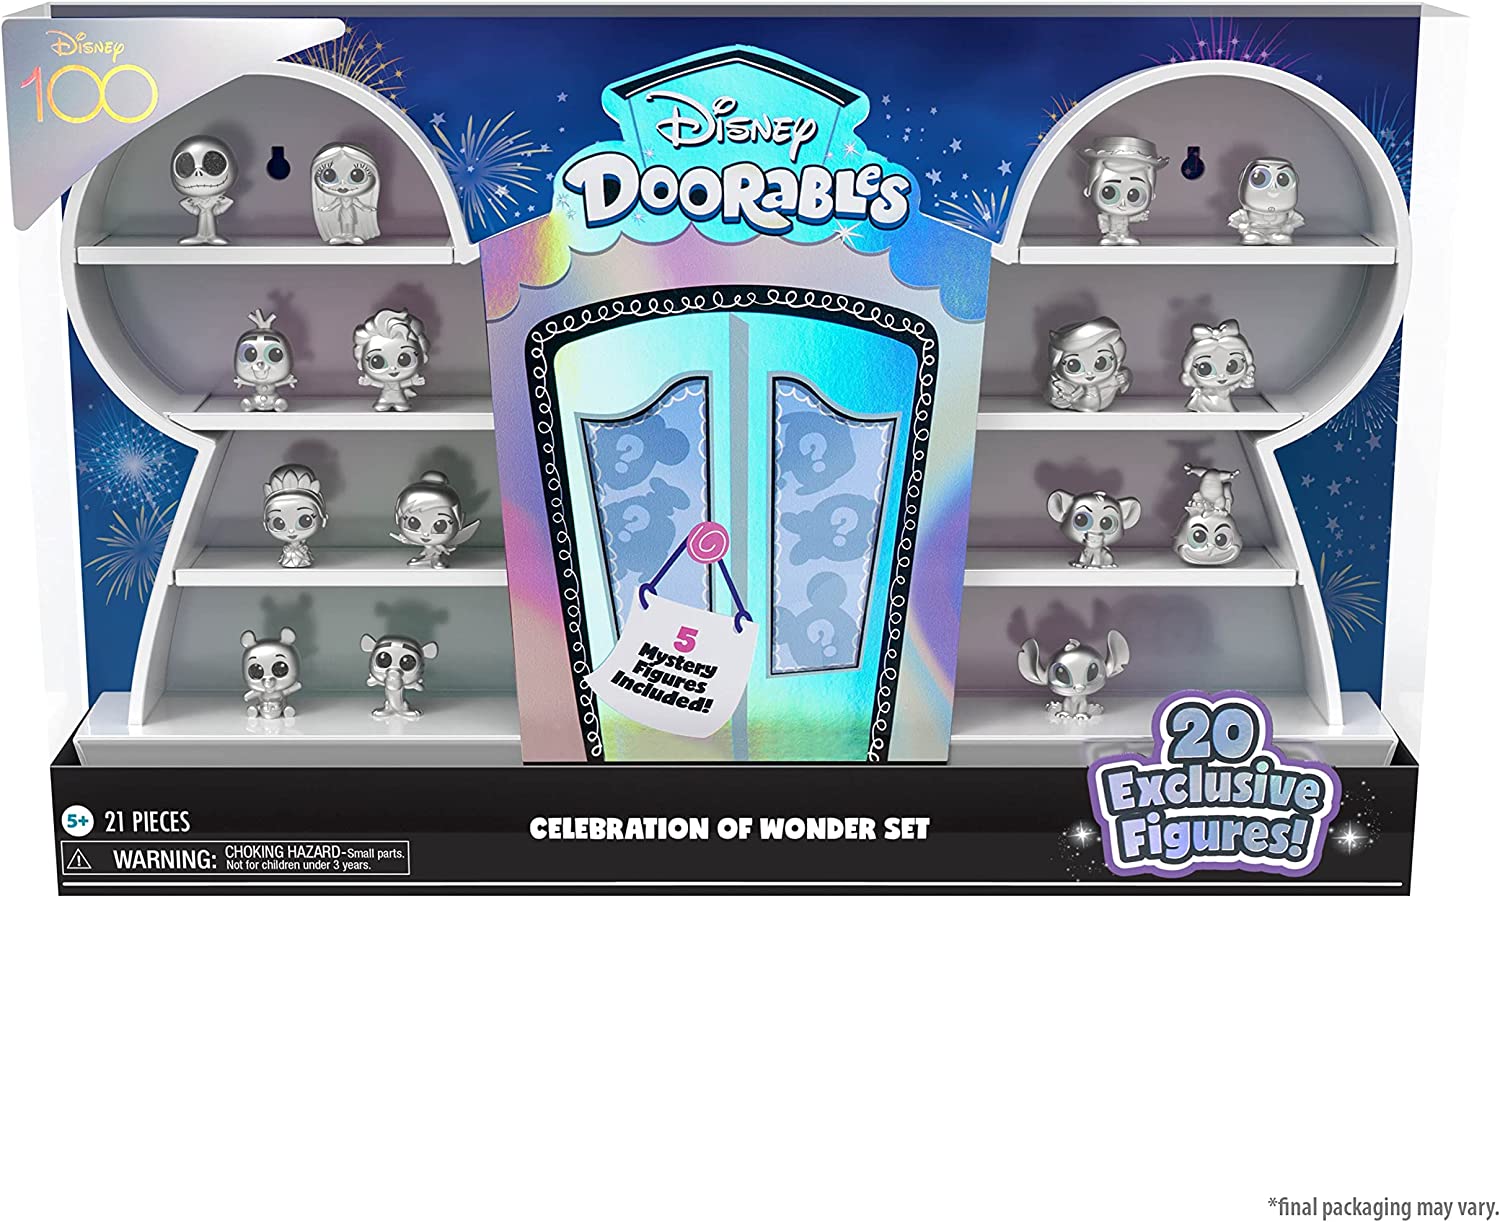 Disney 100 doorables series 10 